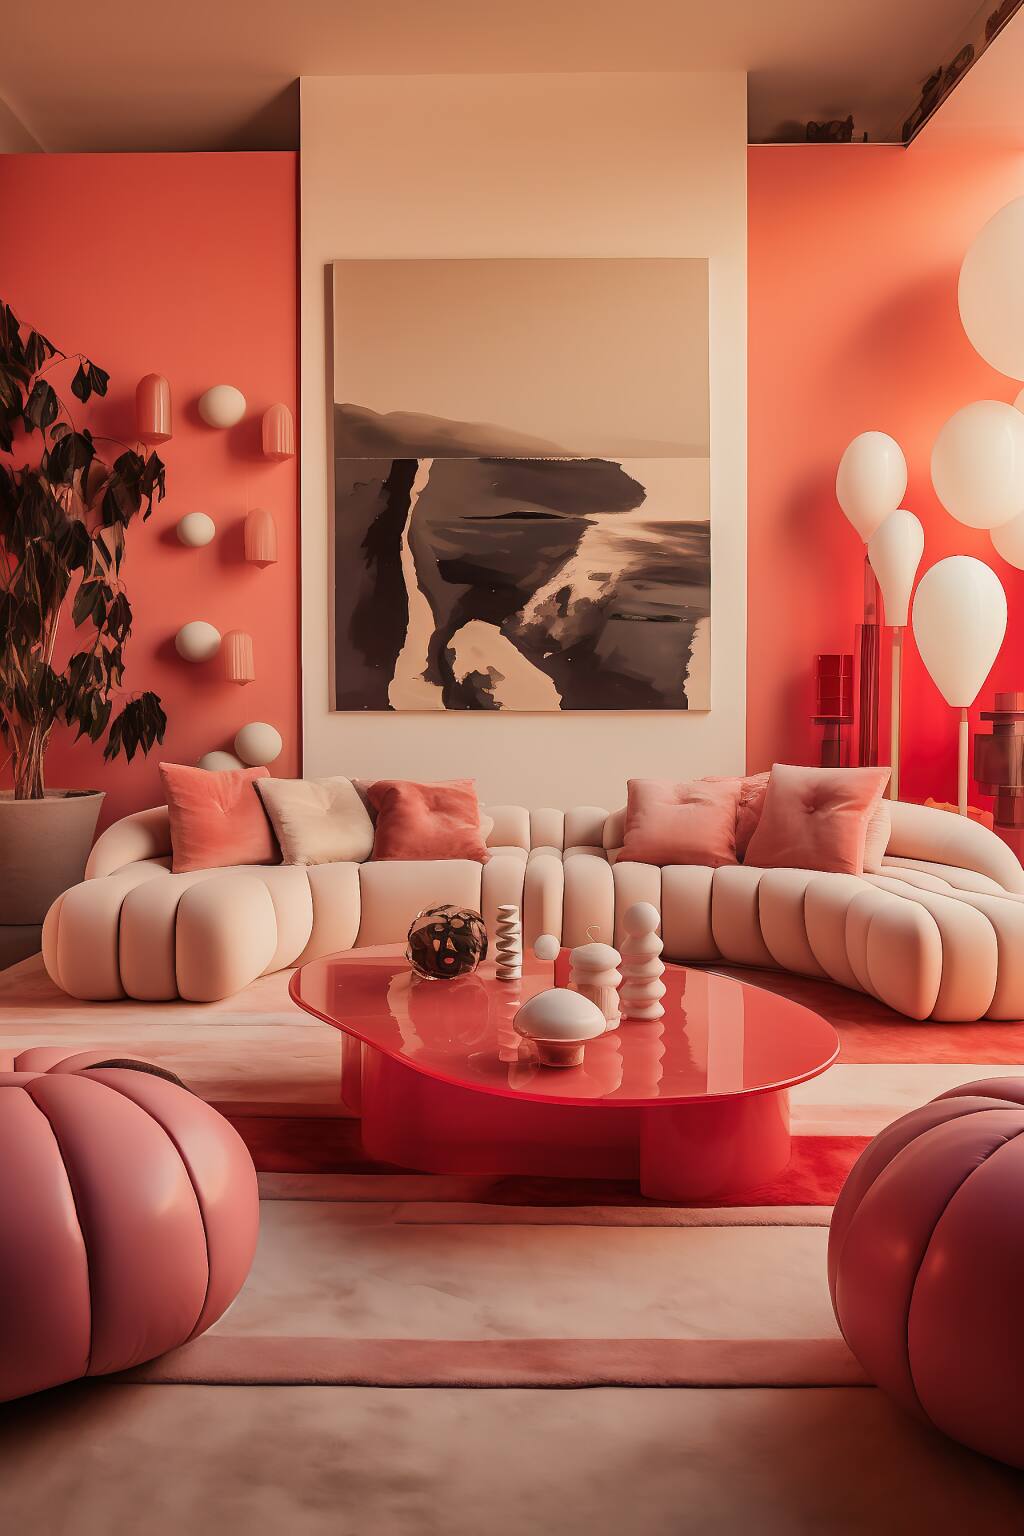 Ein Luxuriöses, Minimalistisches Wohnzimmer Mit Pfirsichrosa Tönen, Einem Roten Couchtisch Und Romantischem, Schickem Dekor.